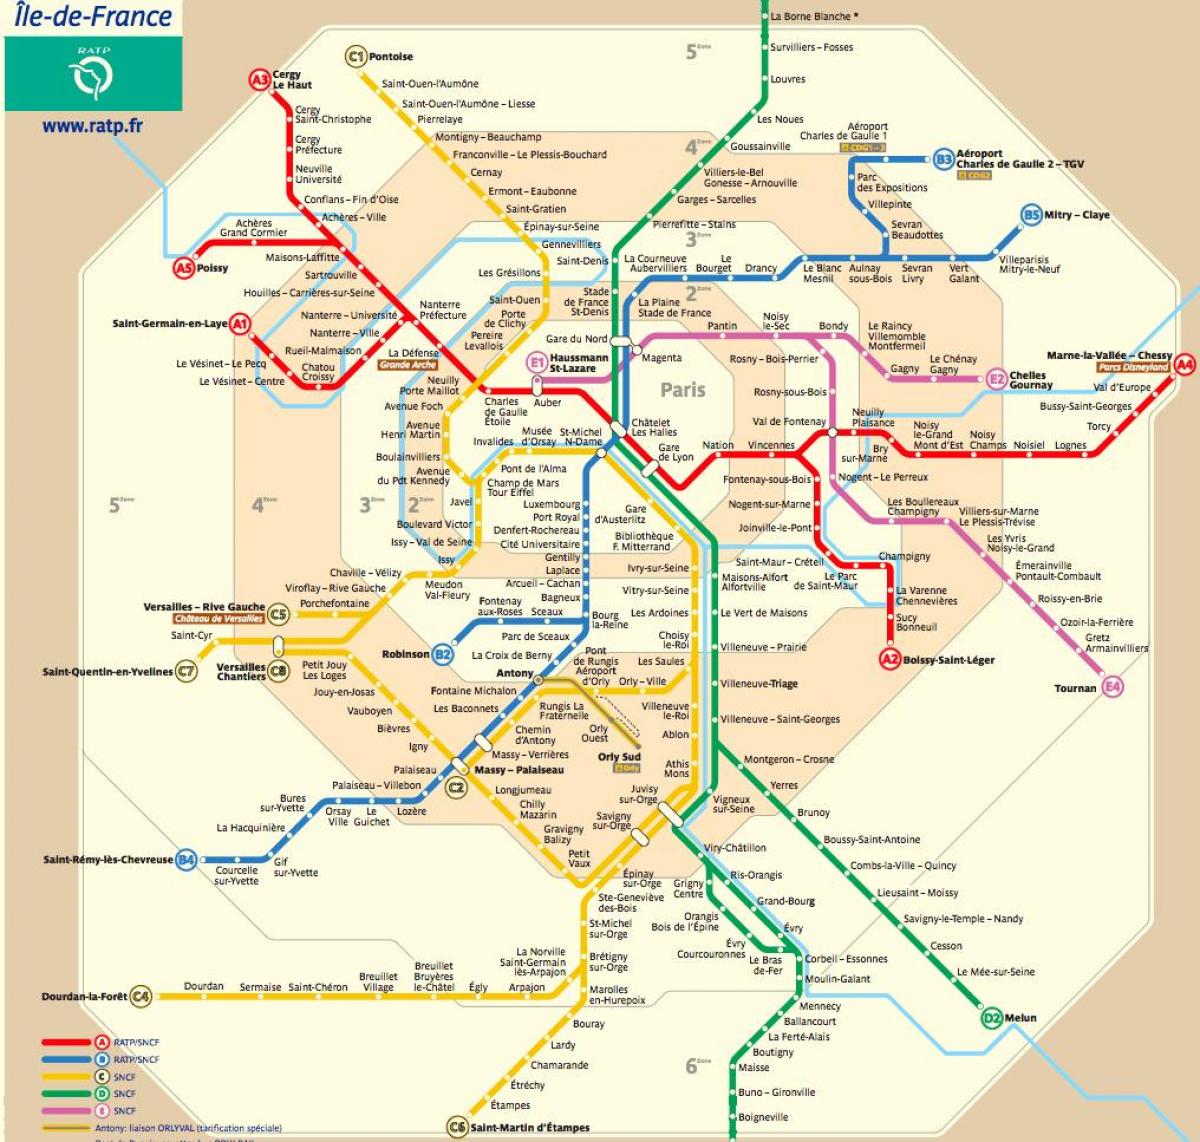 single journey paris metro